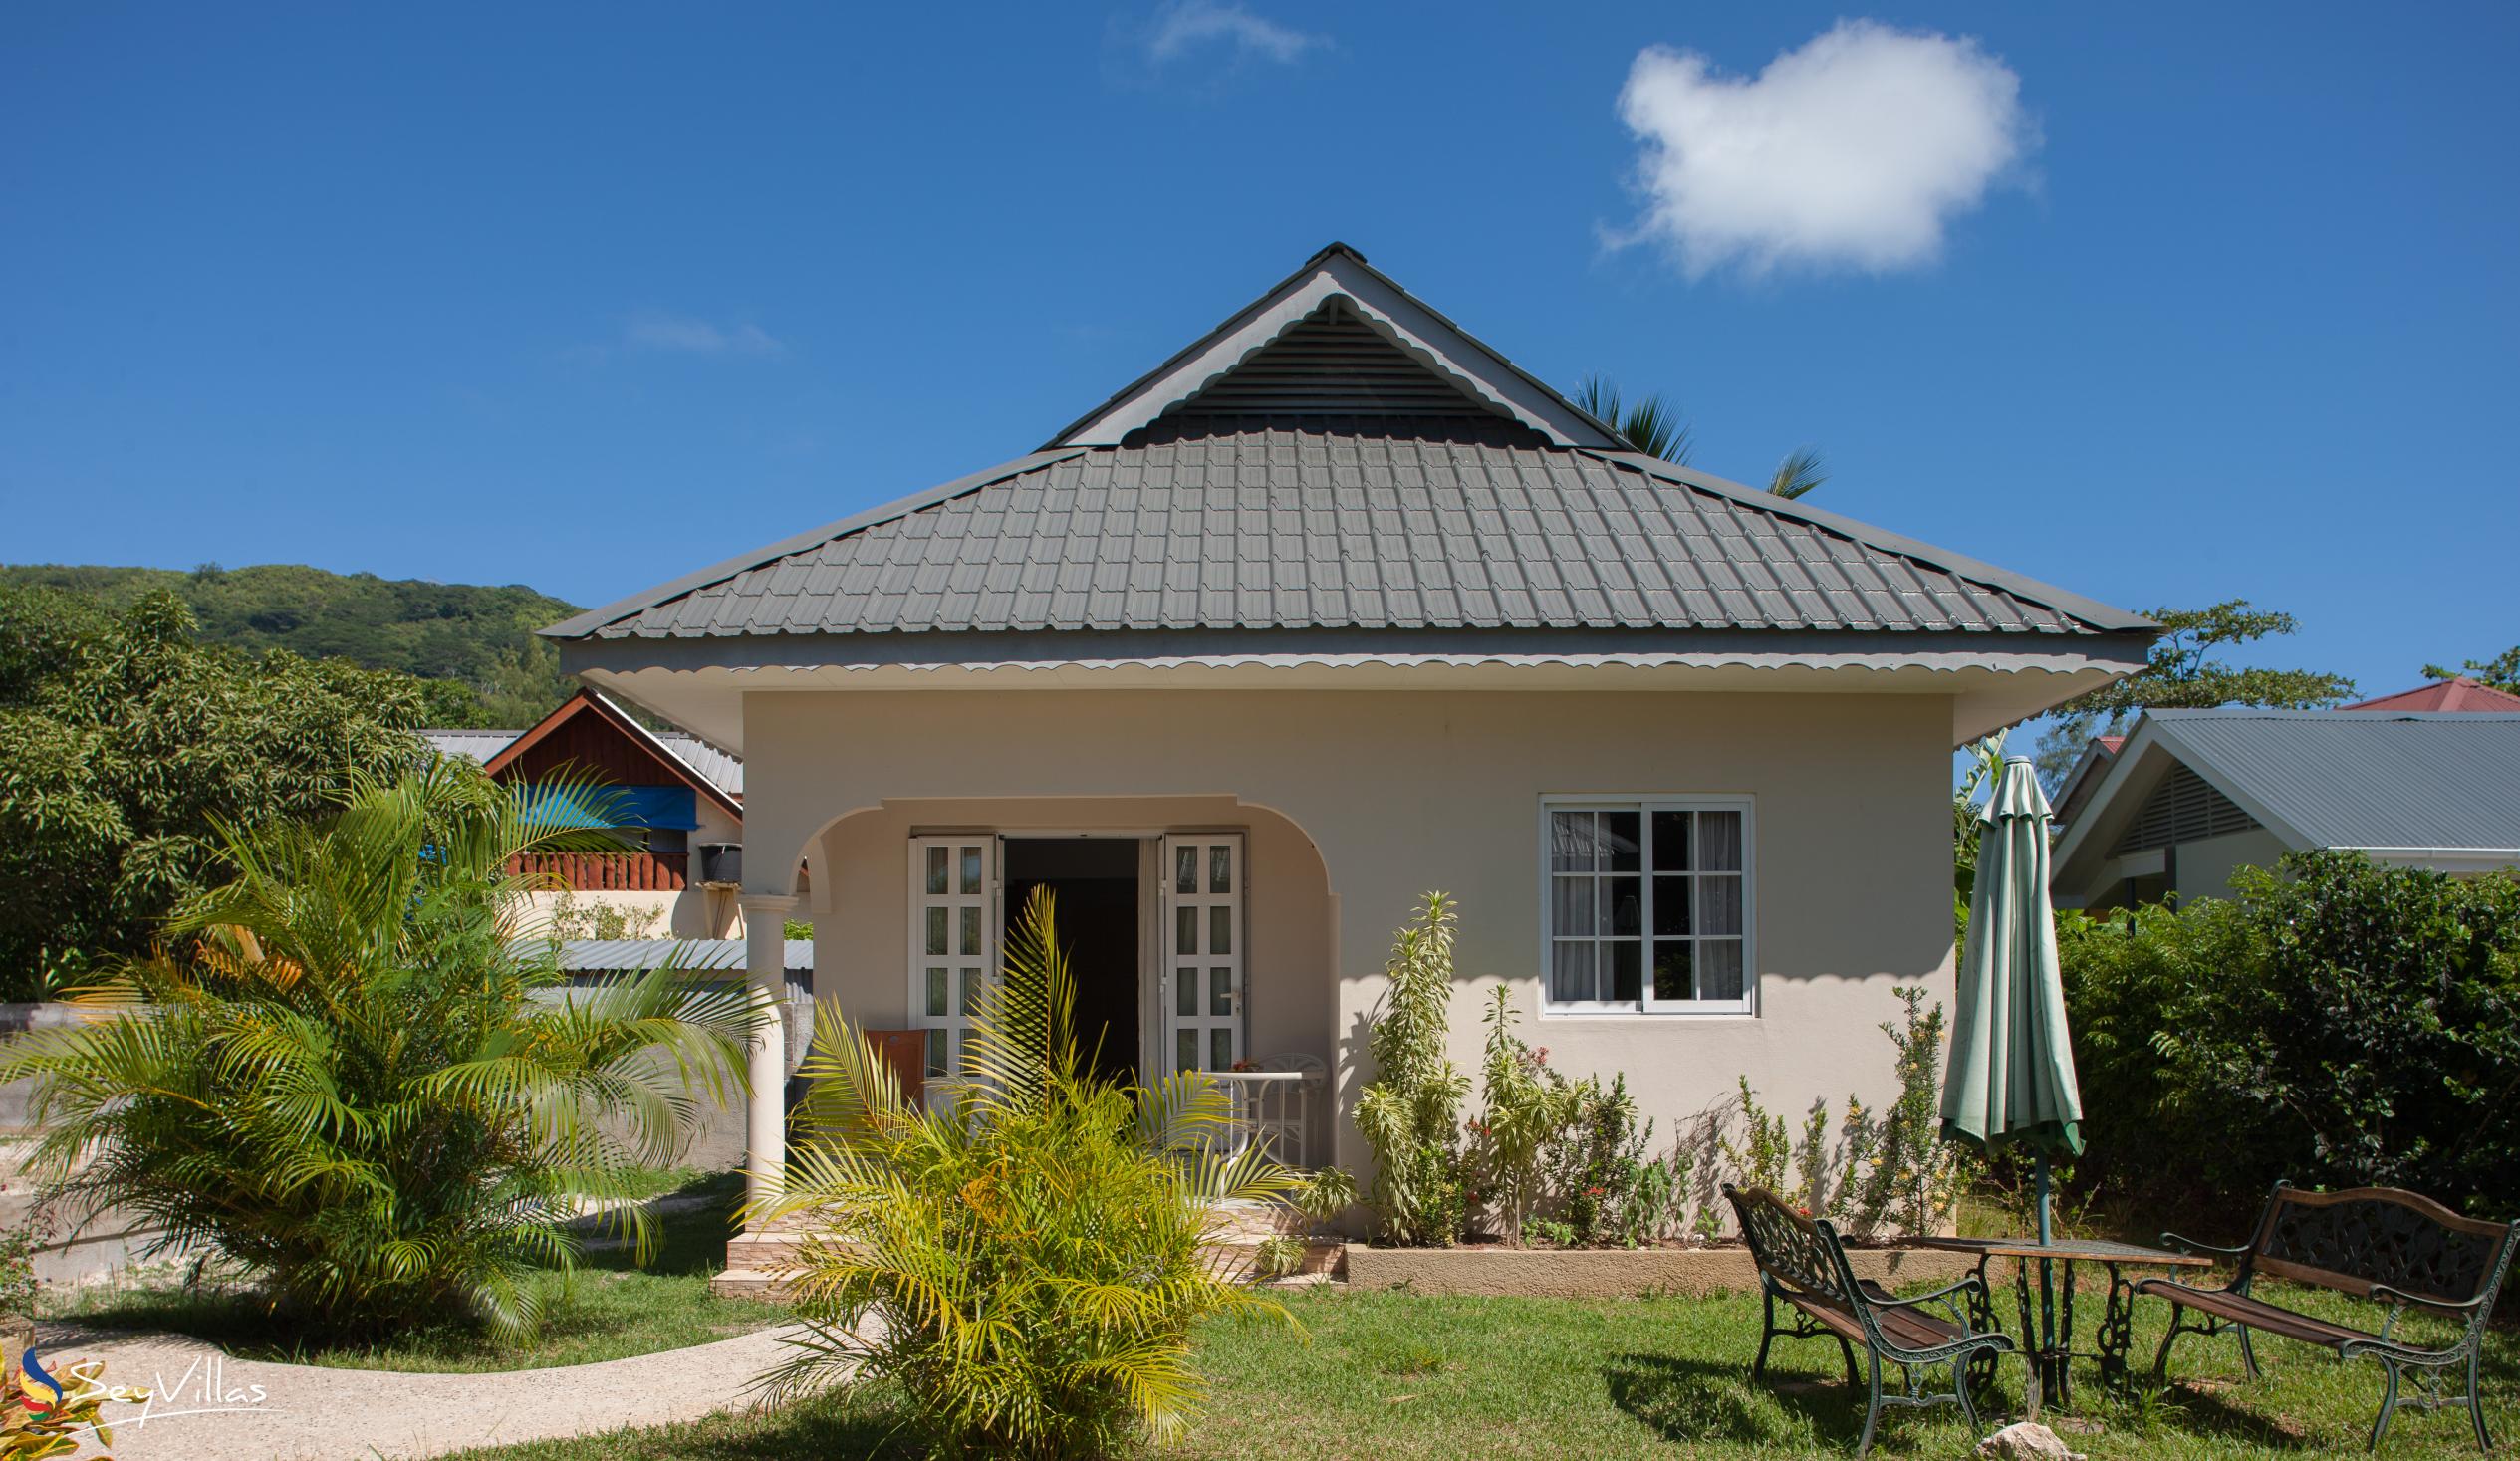 Photo 2: Villa Source D'Argent - Outdoor area - La Digue (Seychelles)